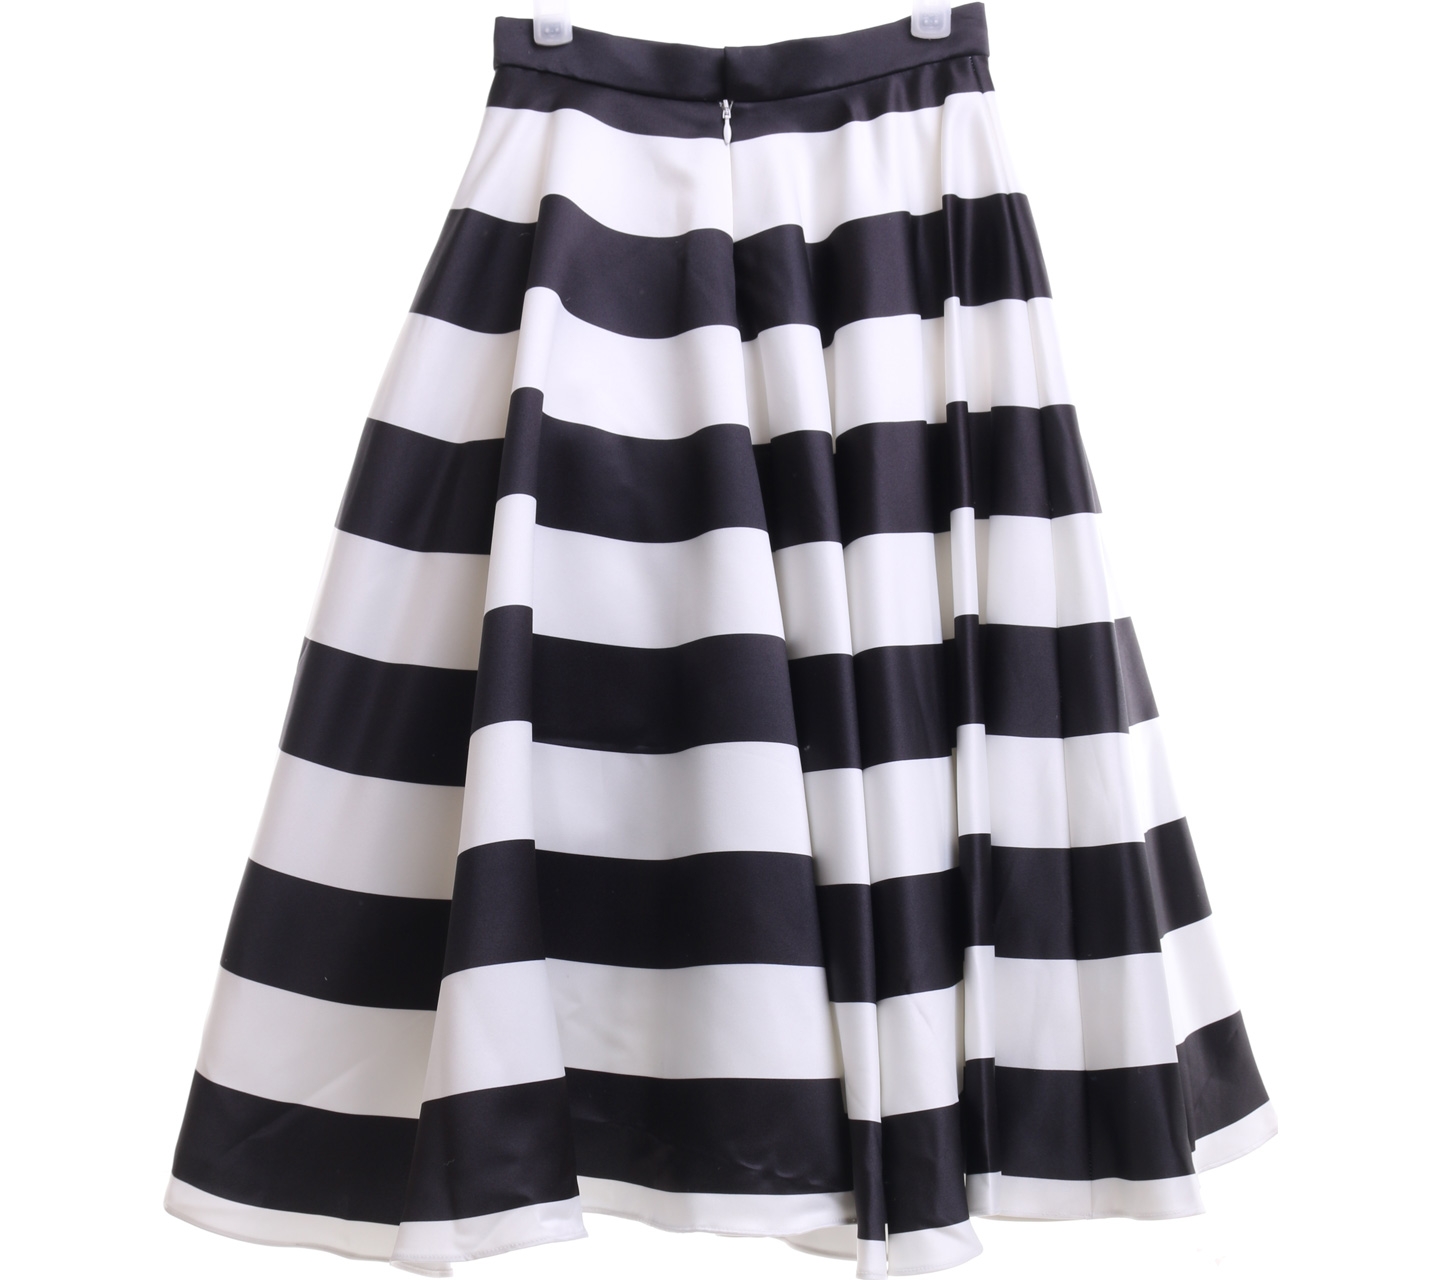 Bonschka Black And White Striped Midi Skirt